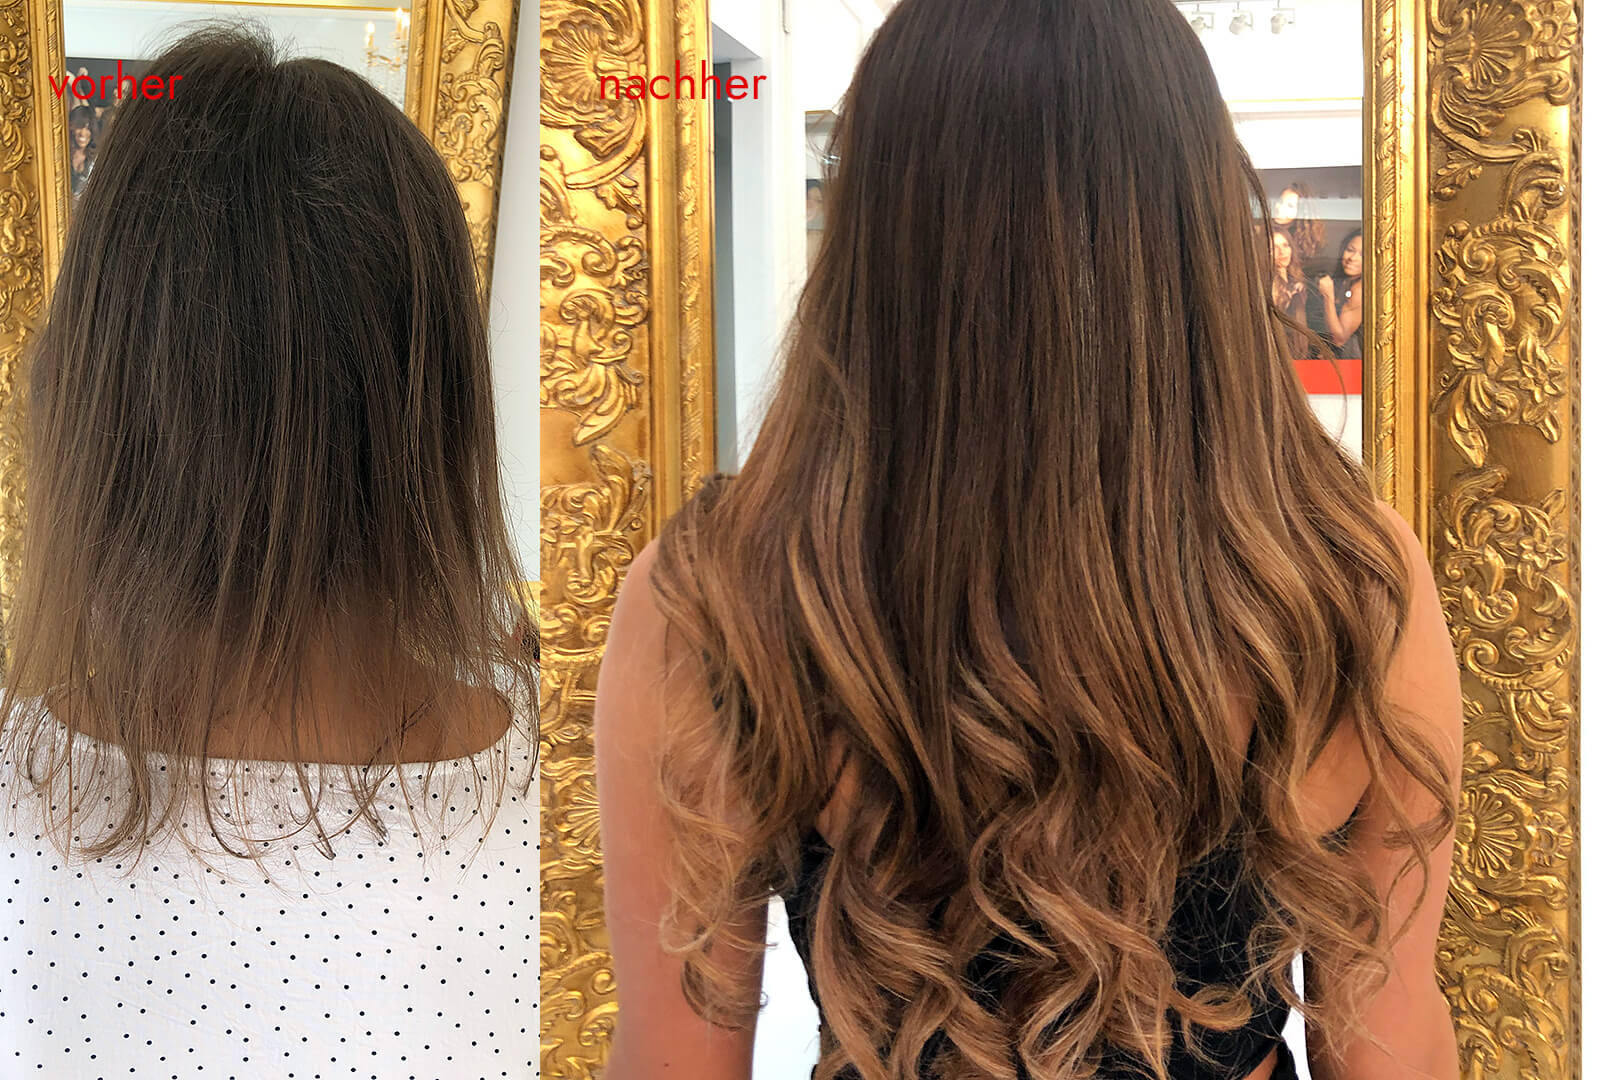 Angelicas Hair Extensions: Kundin vorher und nachher mit Haarverlängerung